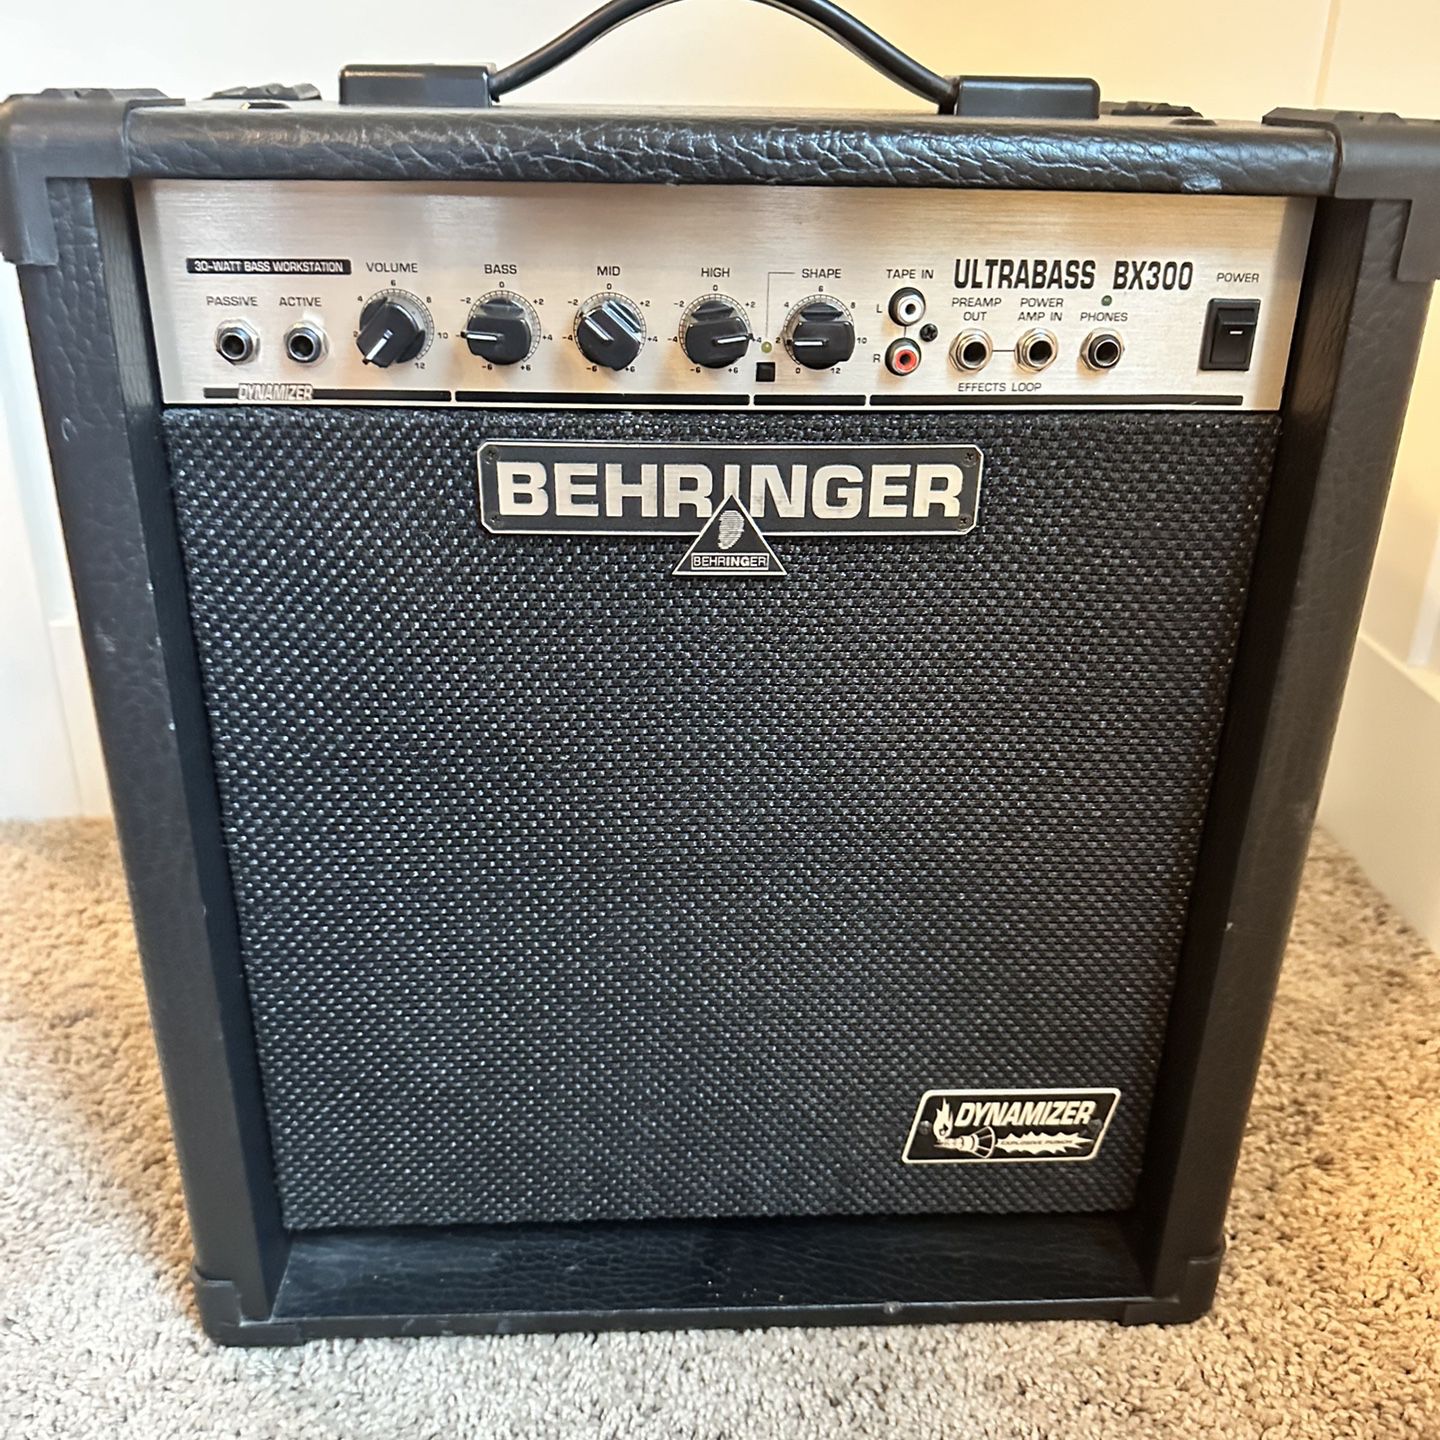 Behringer BX300 Ultrabass 30-Watt 1x10" Bass Combo